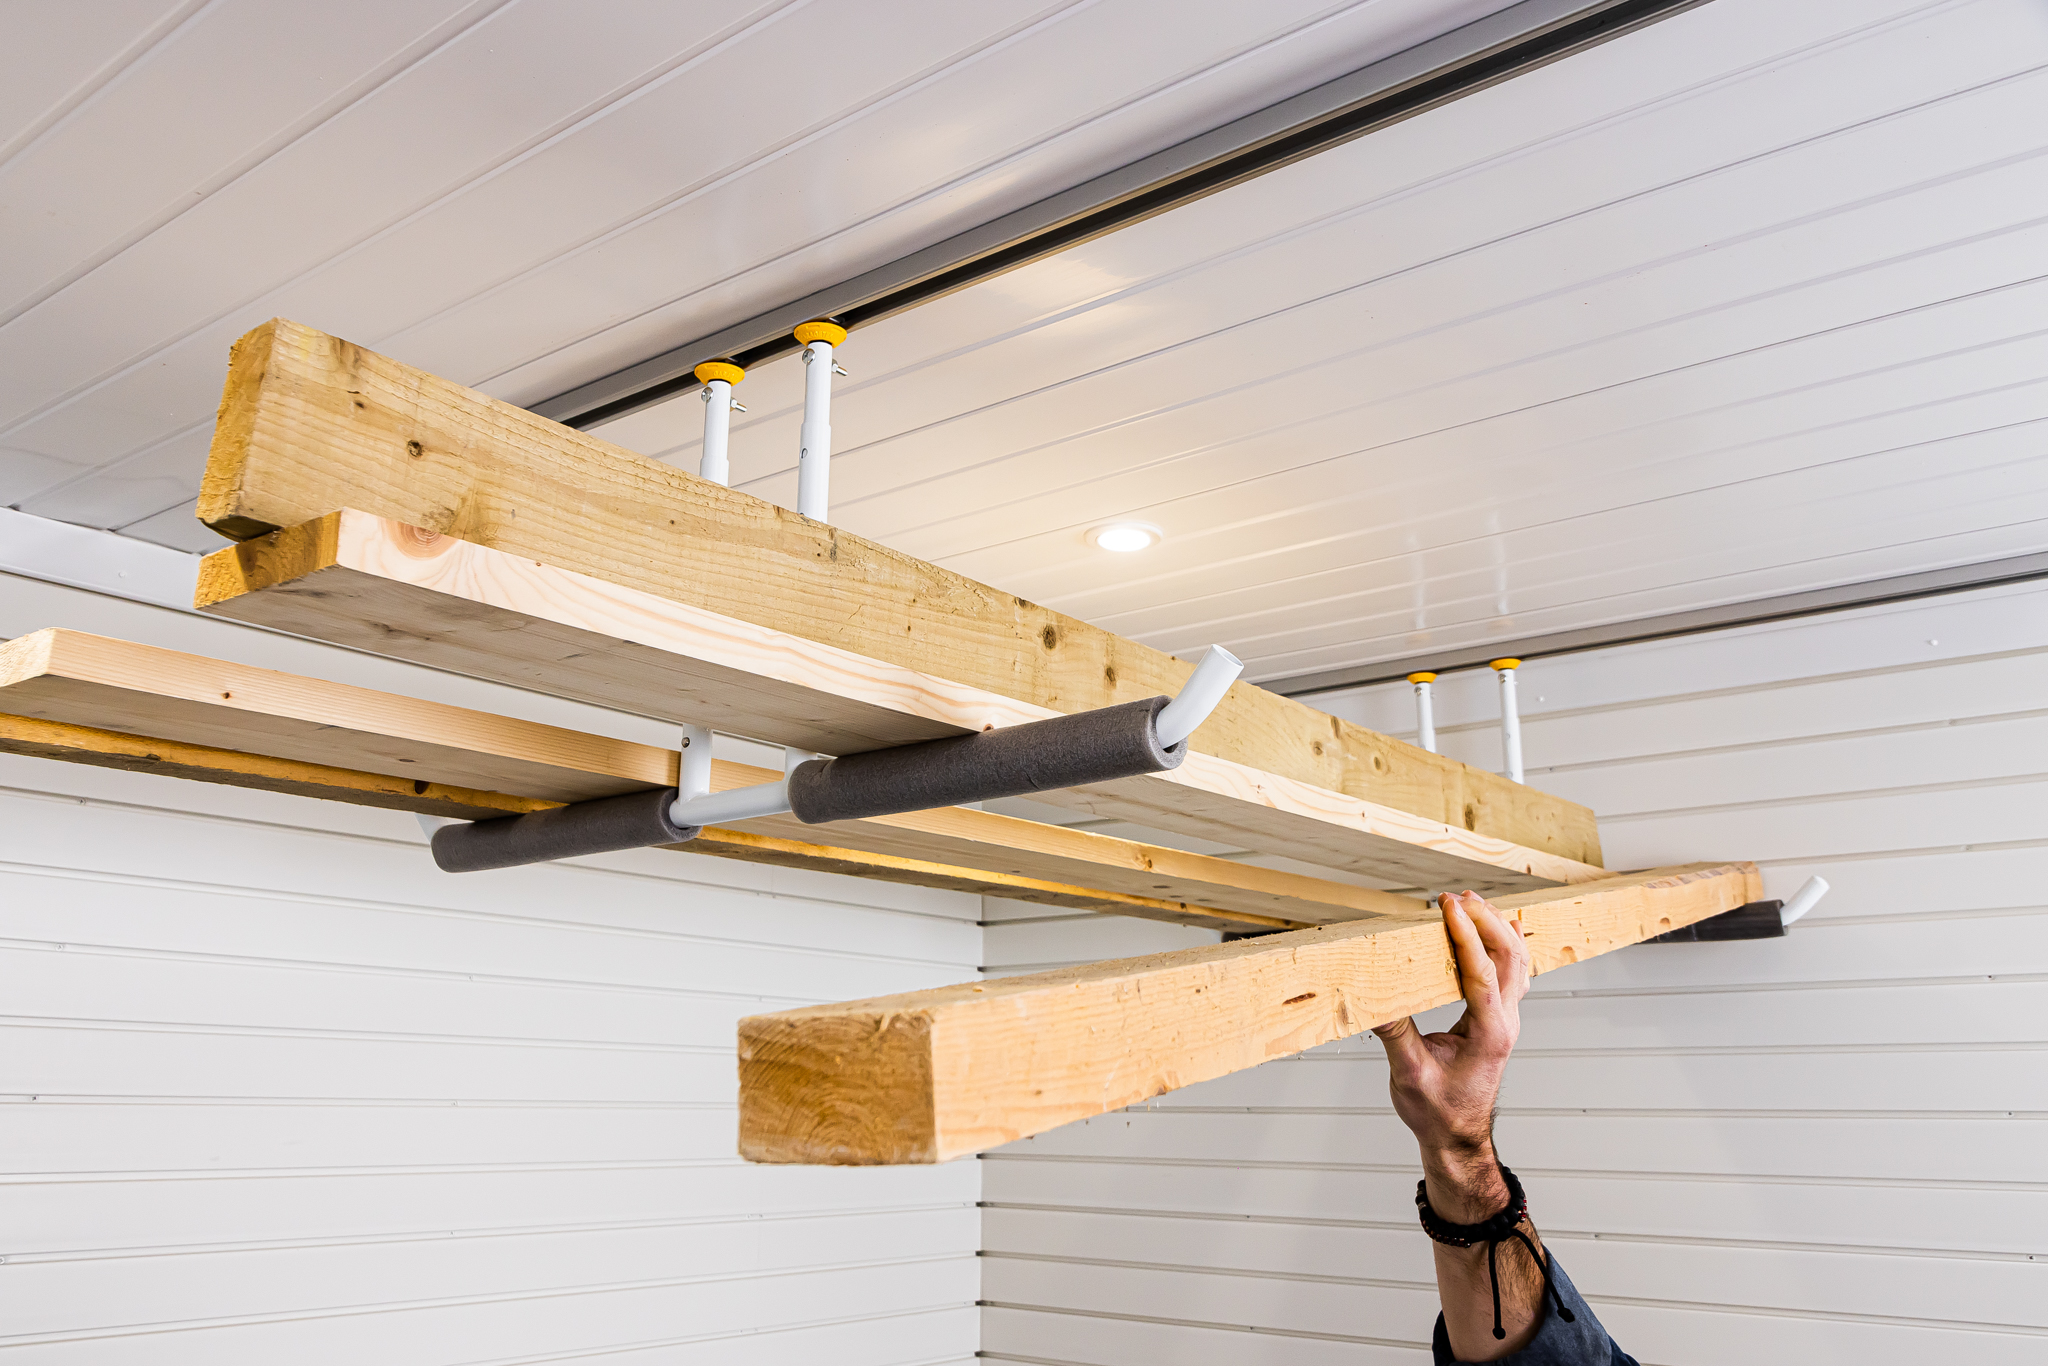 Adjustable storage rack for the garage ceiling